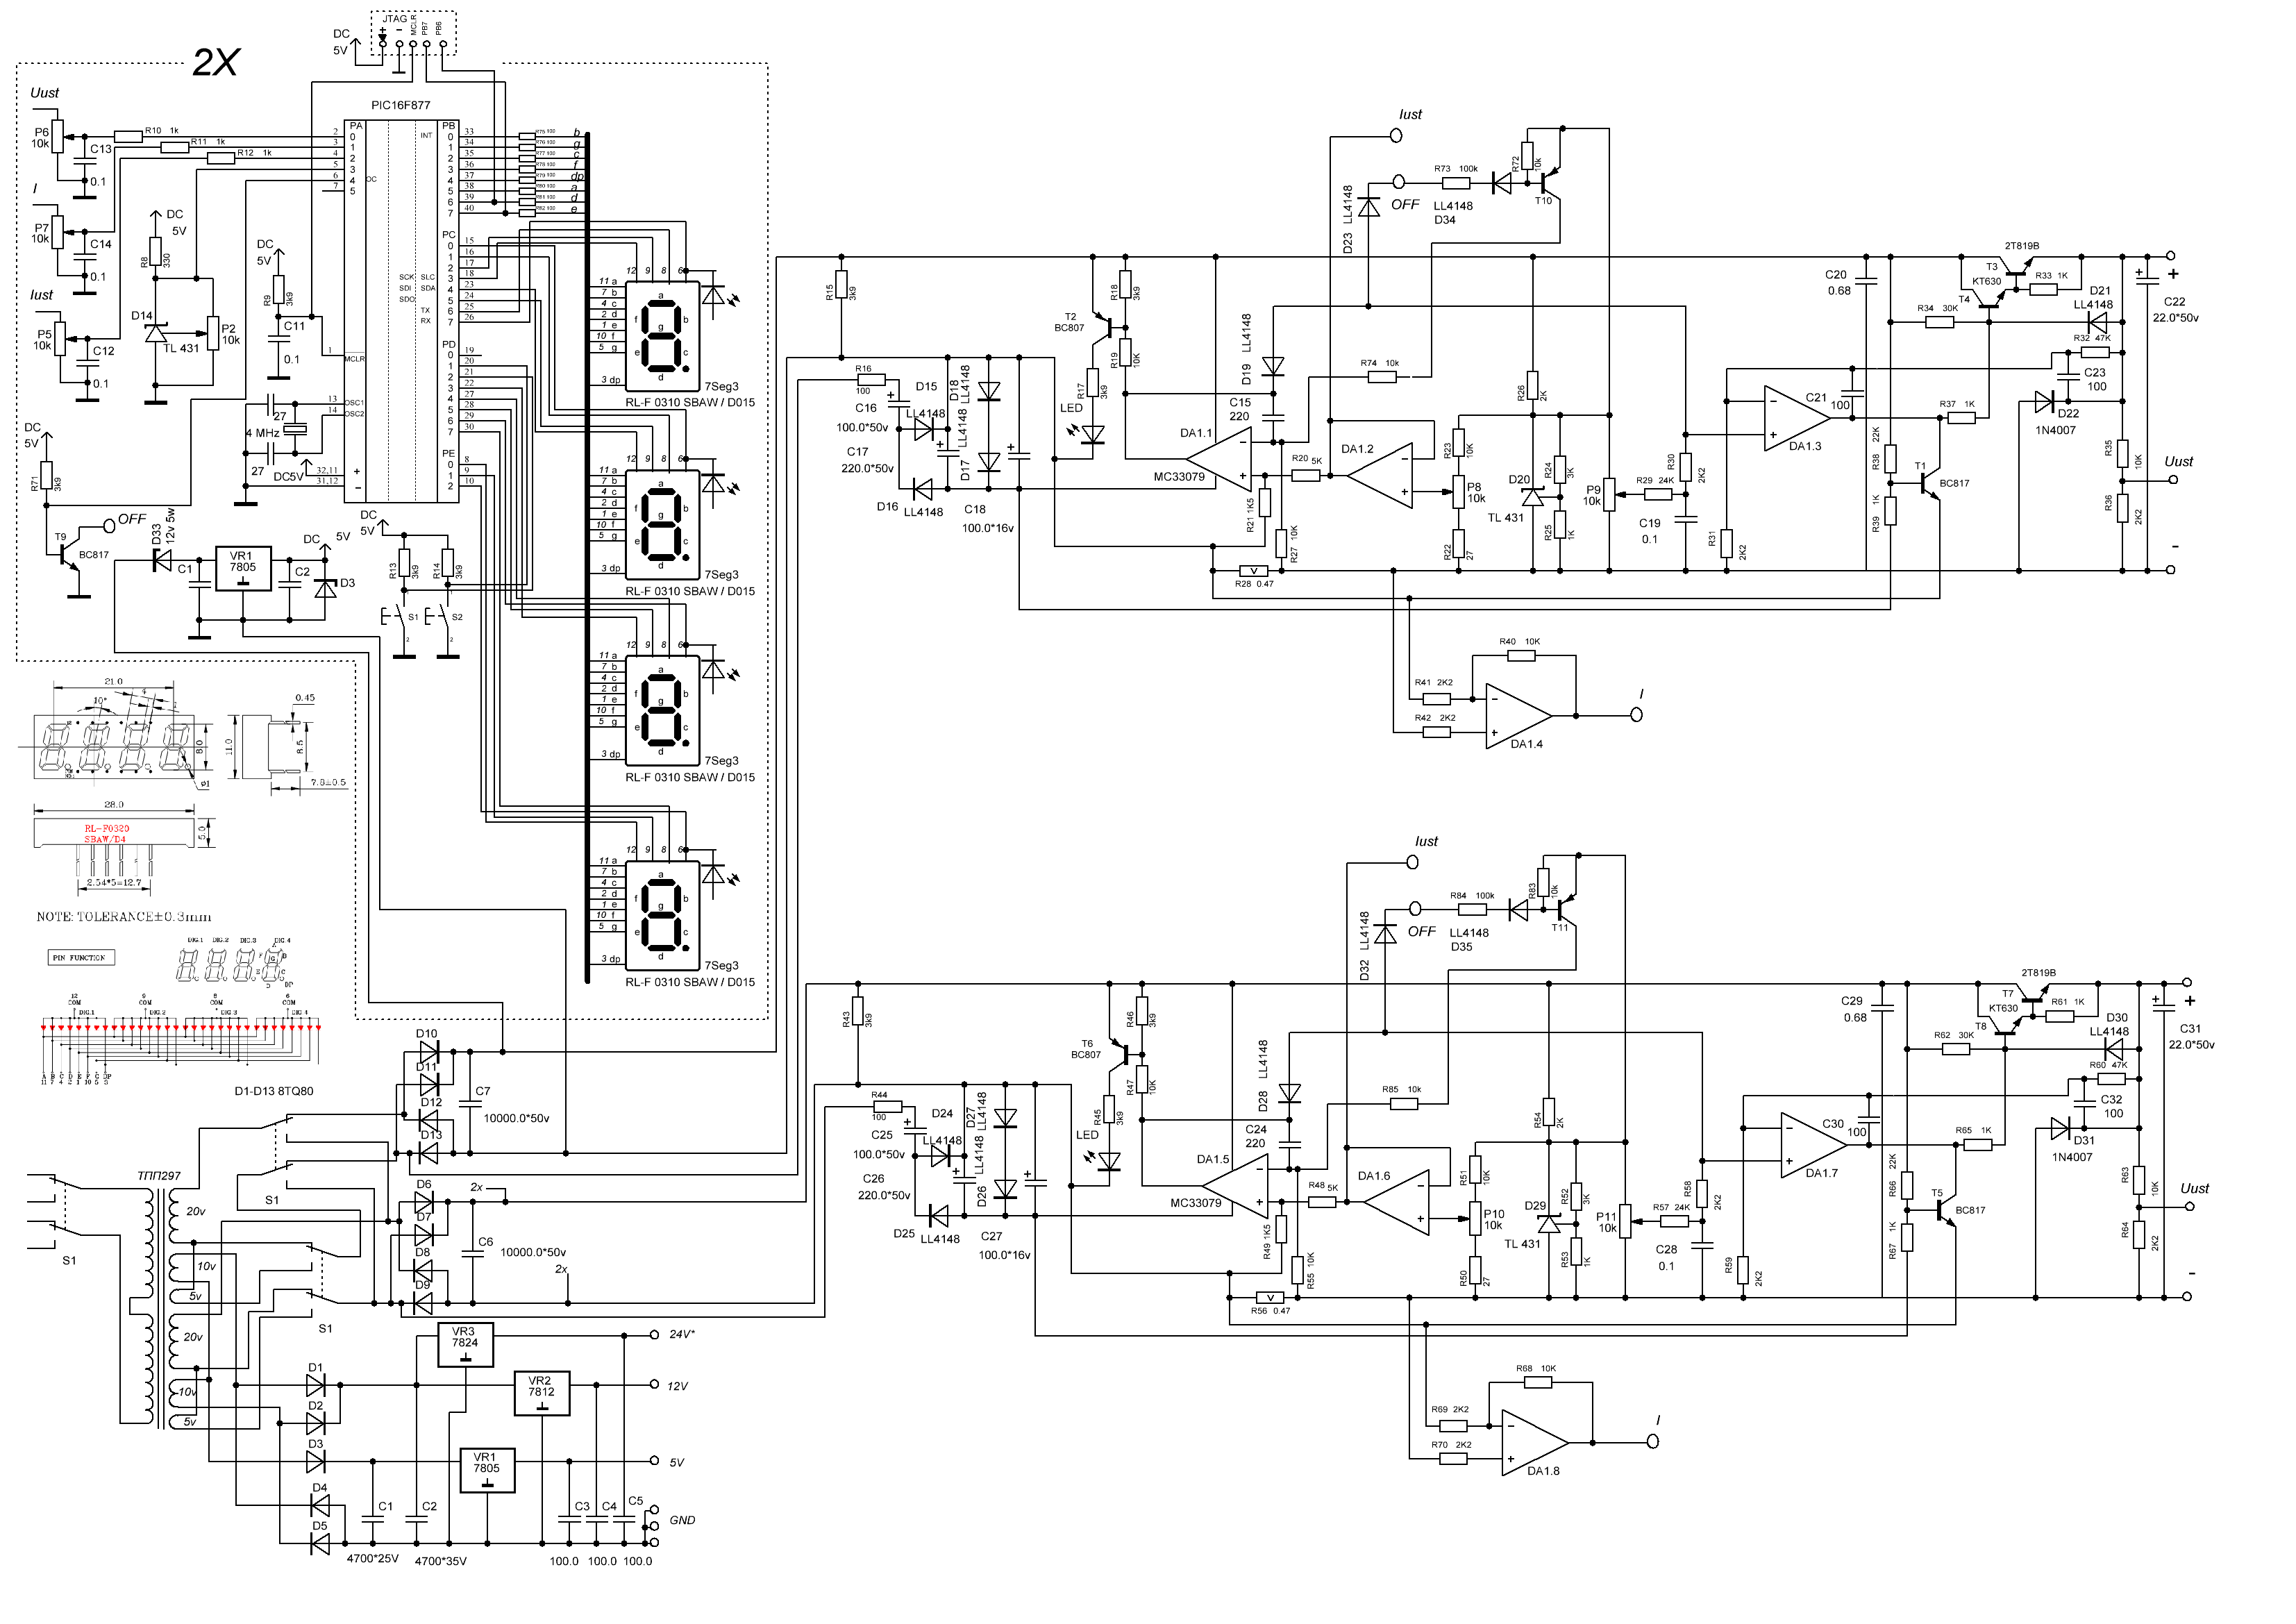 Лабораторный блок питания на PIC16F877 - схема